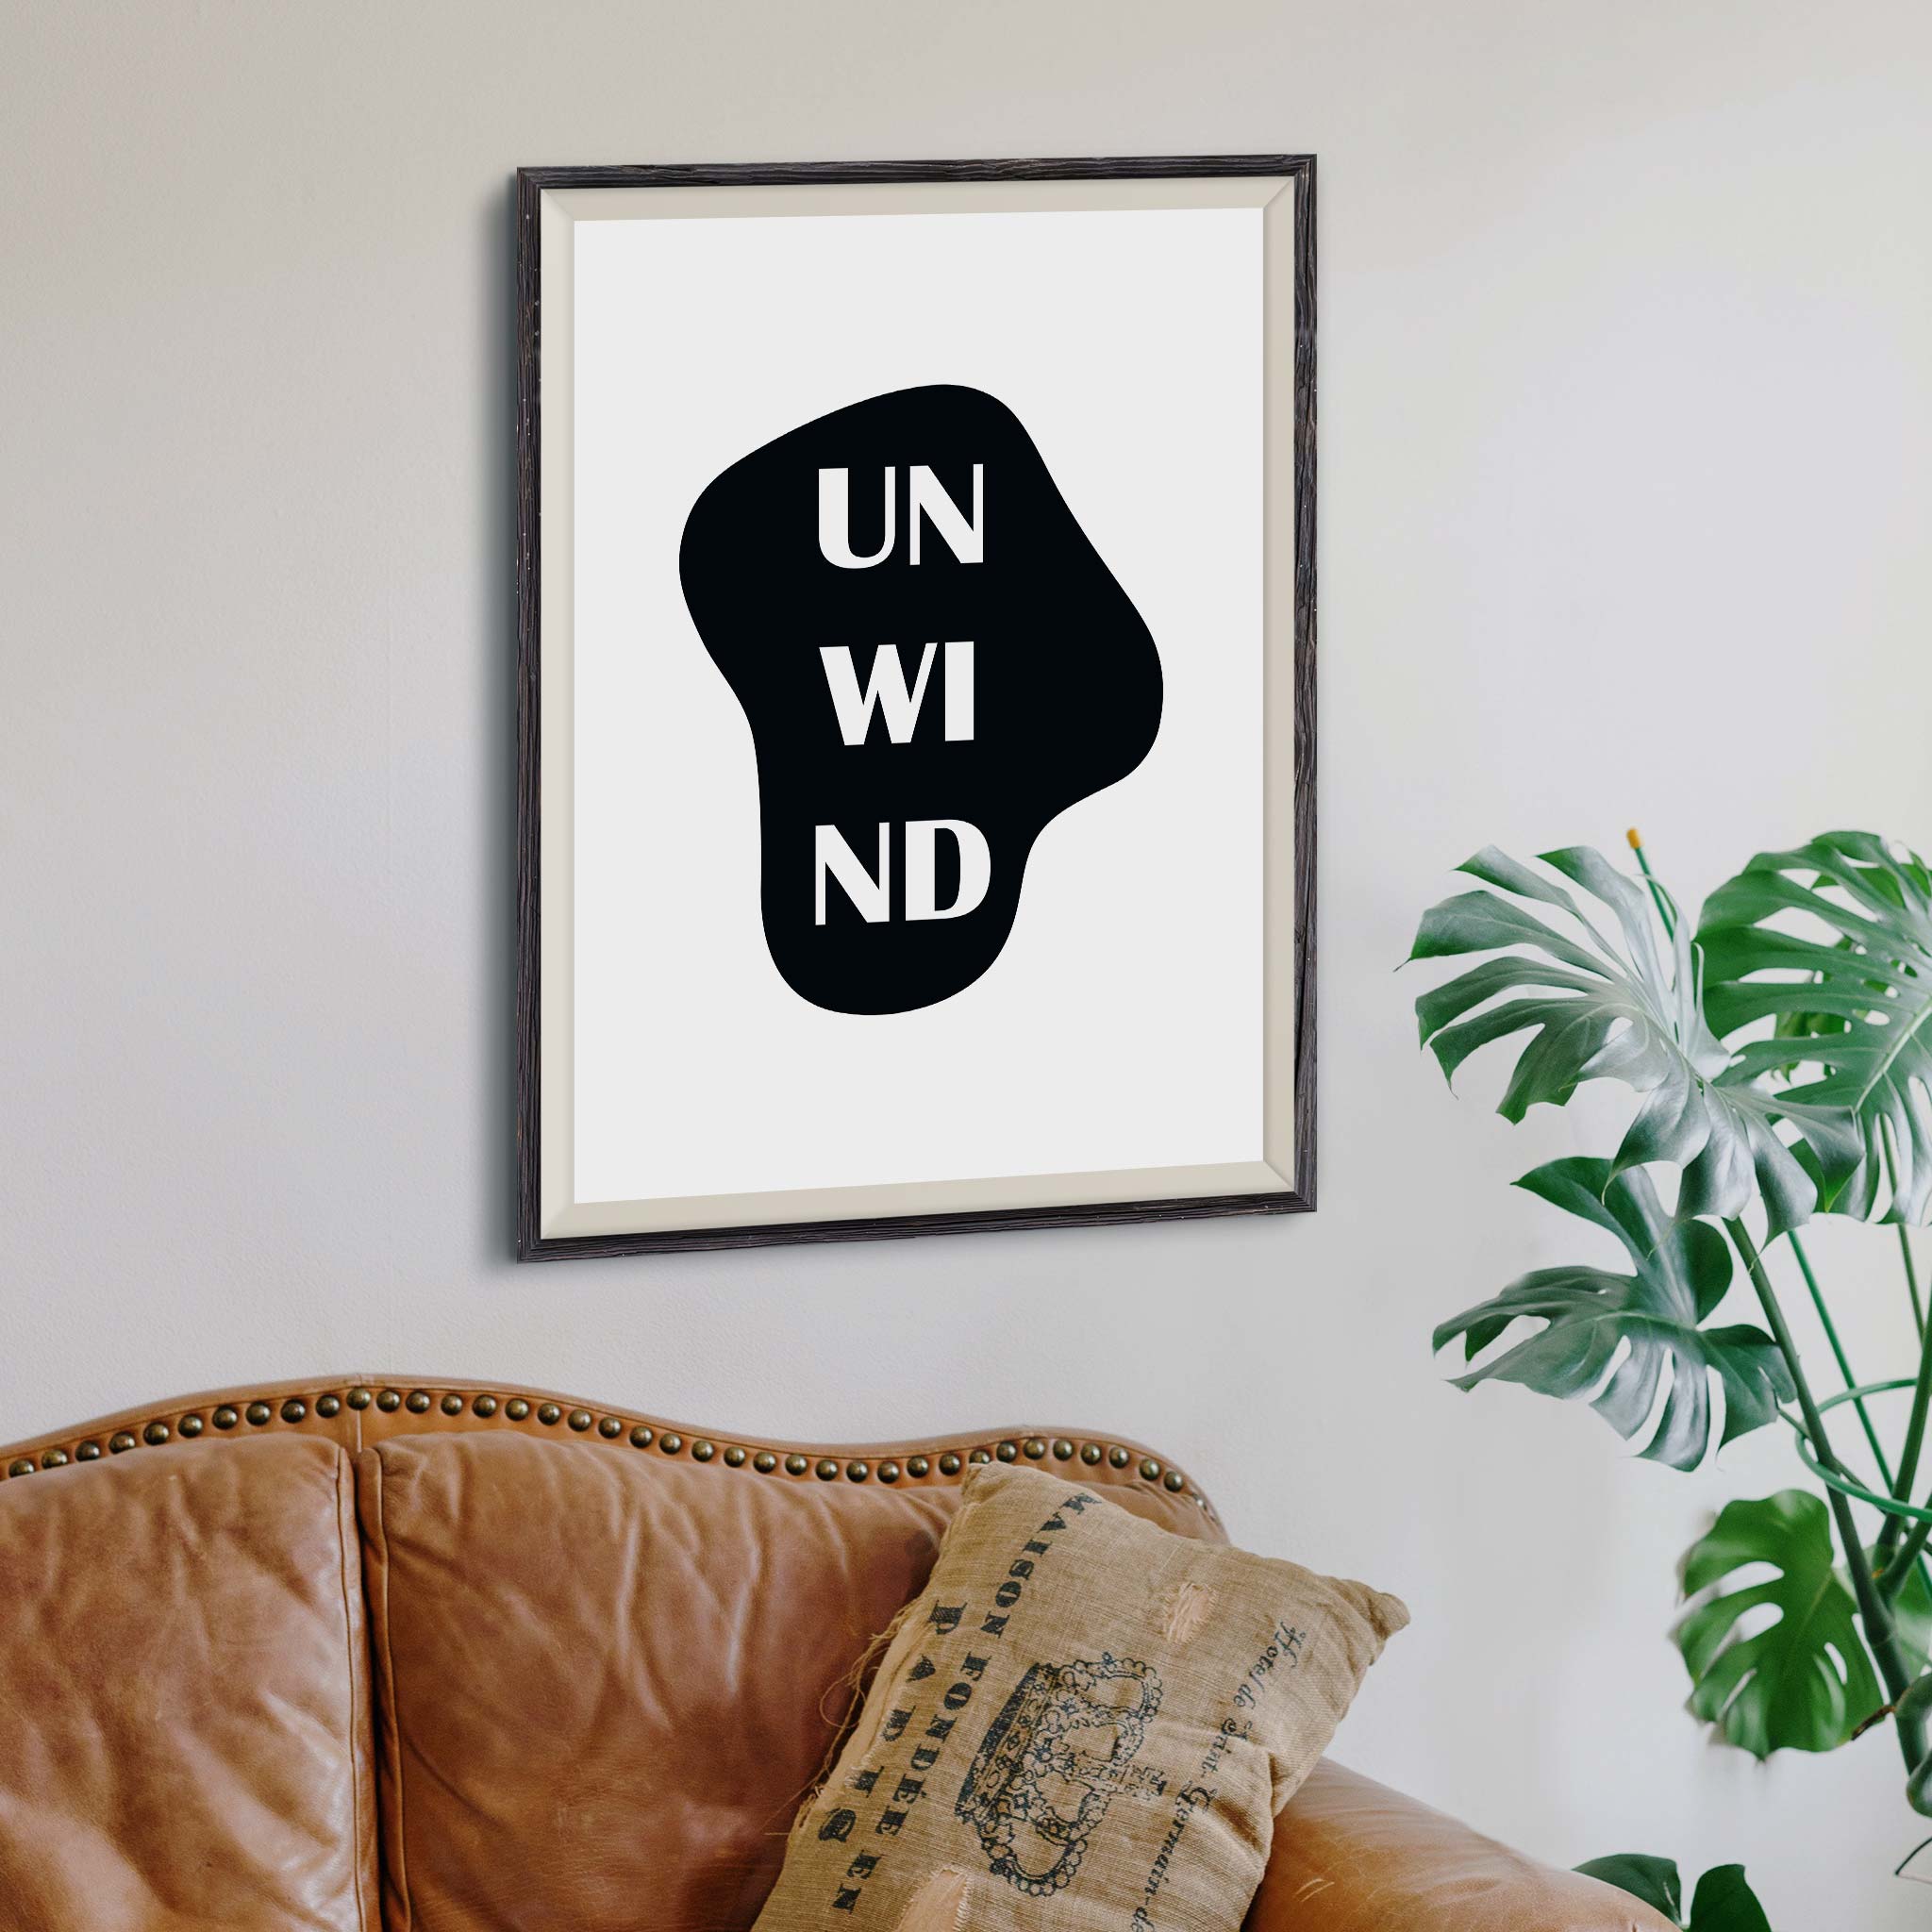 Unwind (un wi nd)